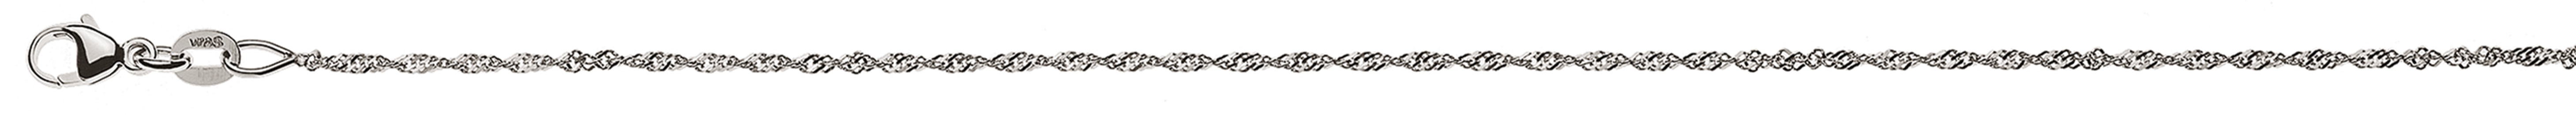 AURONOS Style Halskette Weissgold 9K Singapurkette 50cm 1.2mm